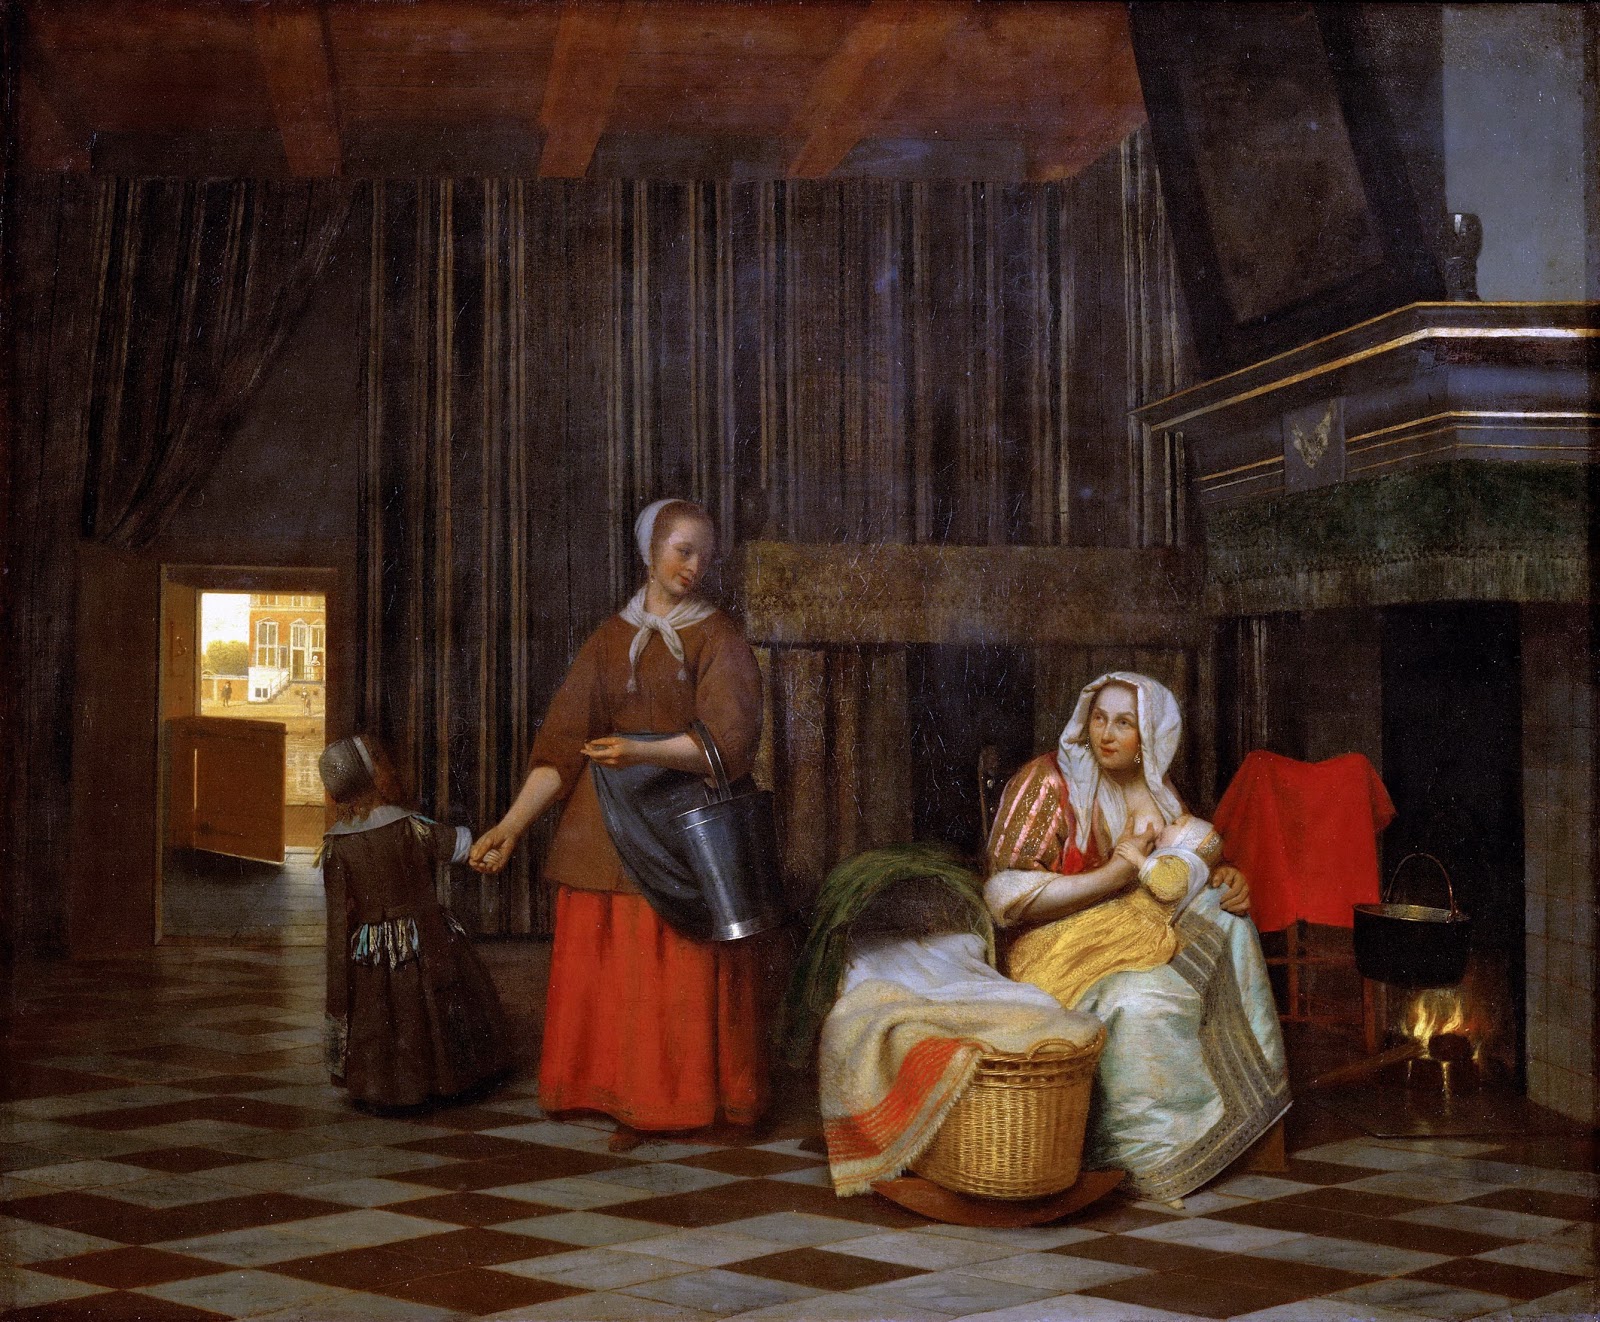 Pieter de Hooch - A Baroque Era painter